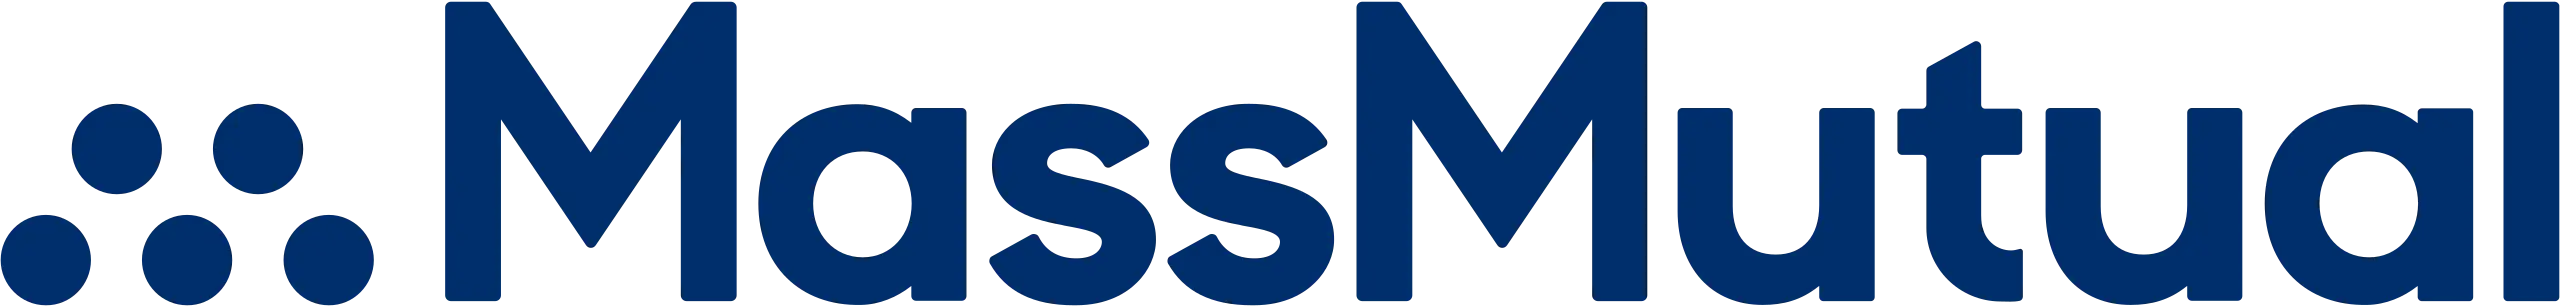 MassMutual logo